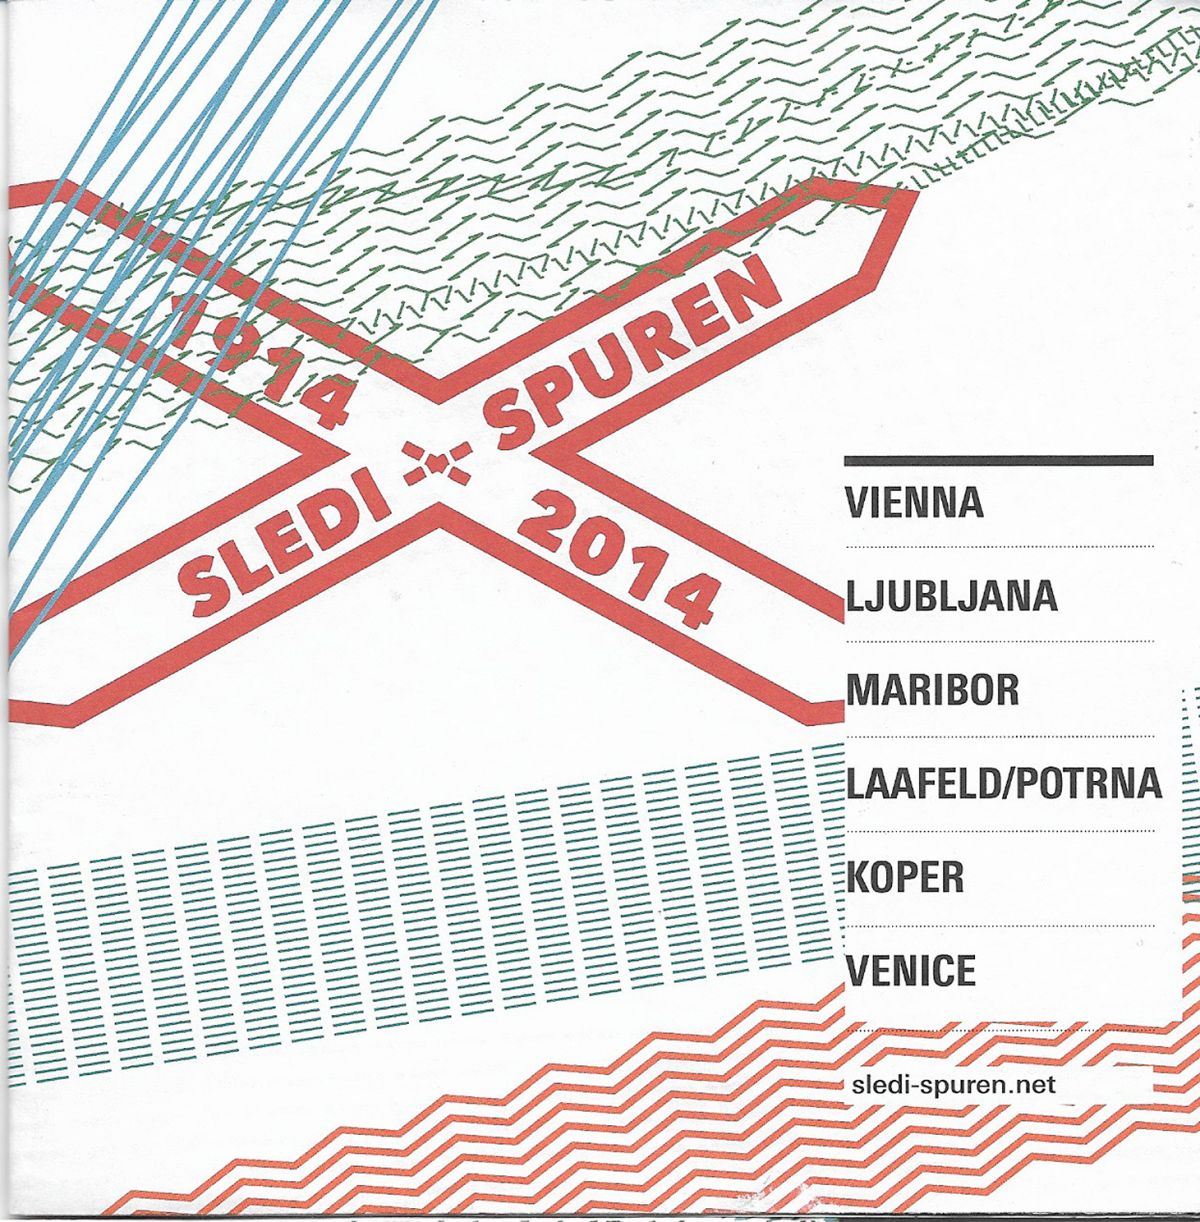 SLEDI-SPUREN, potujoča razstava, april do december 2014.